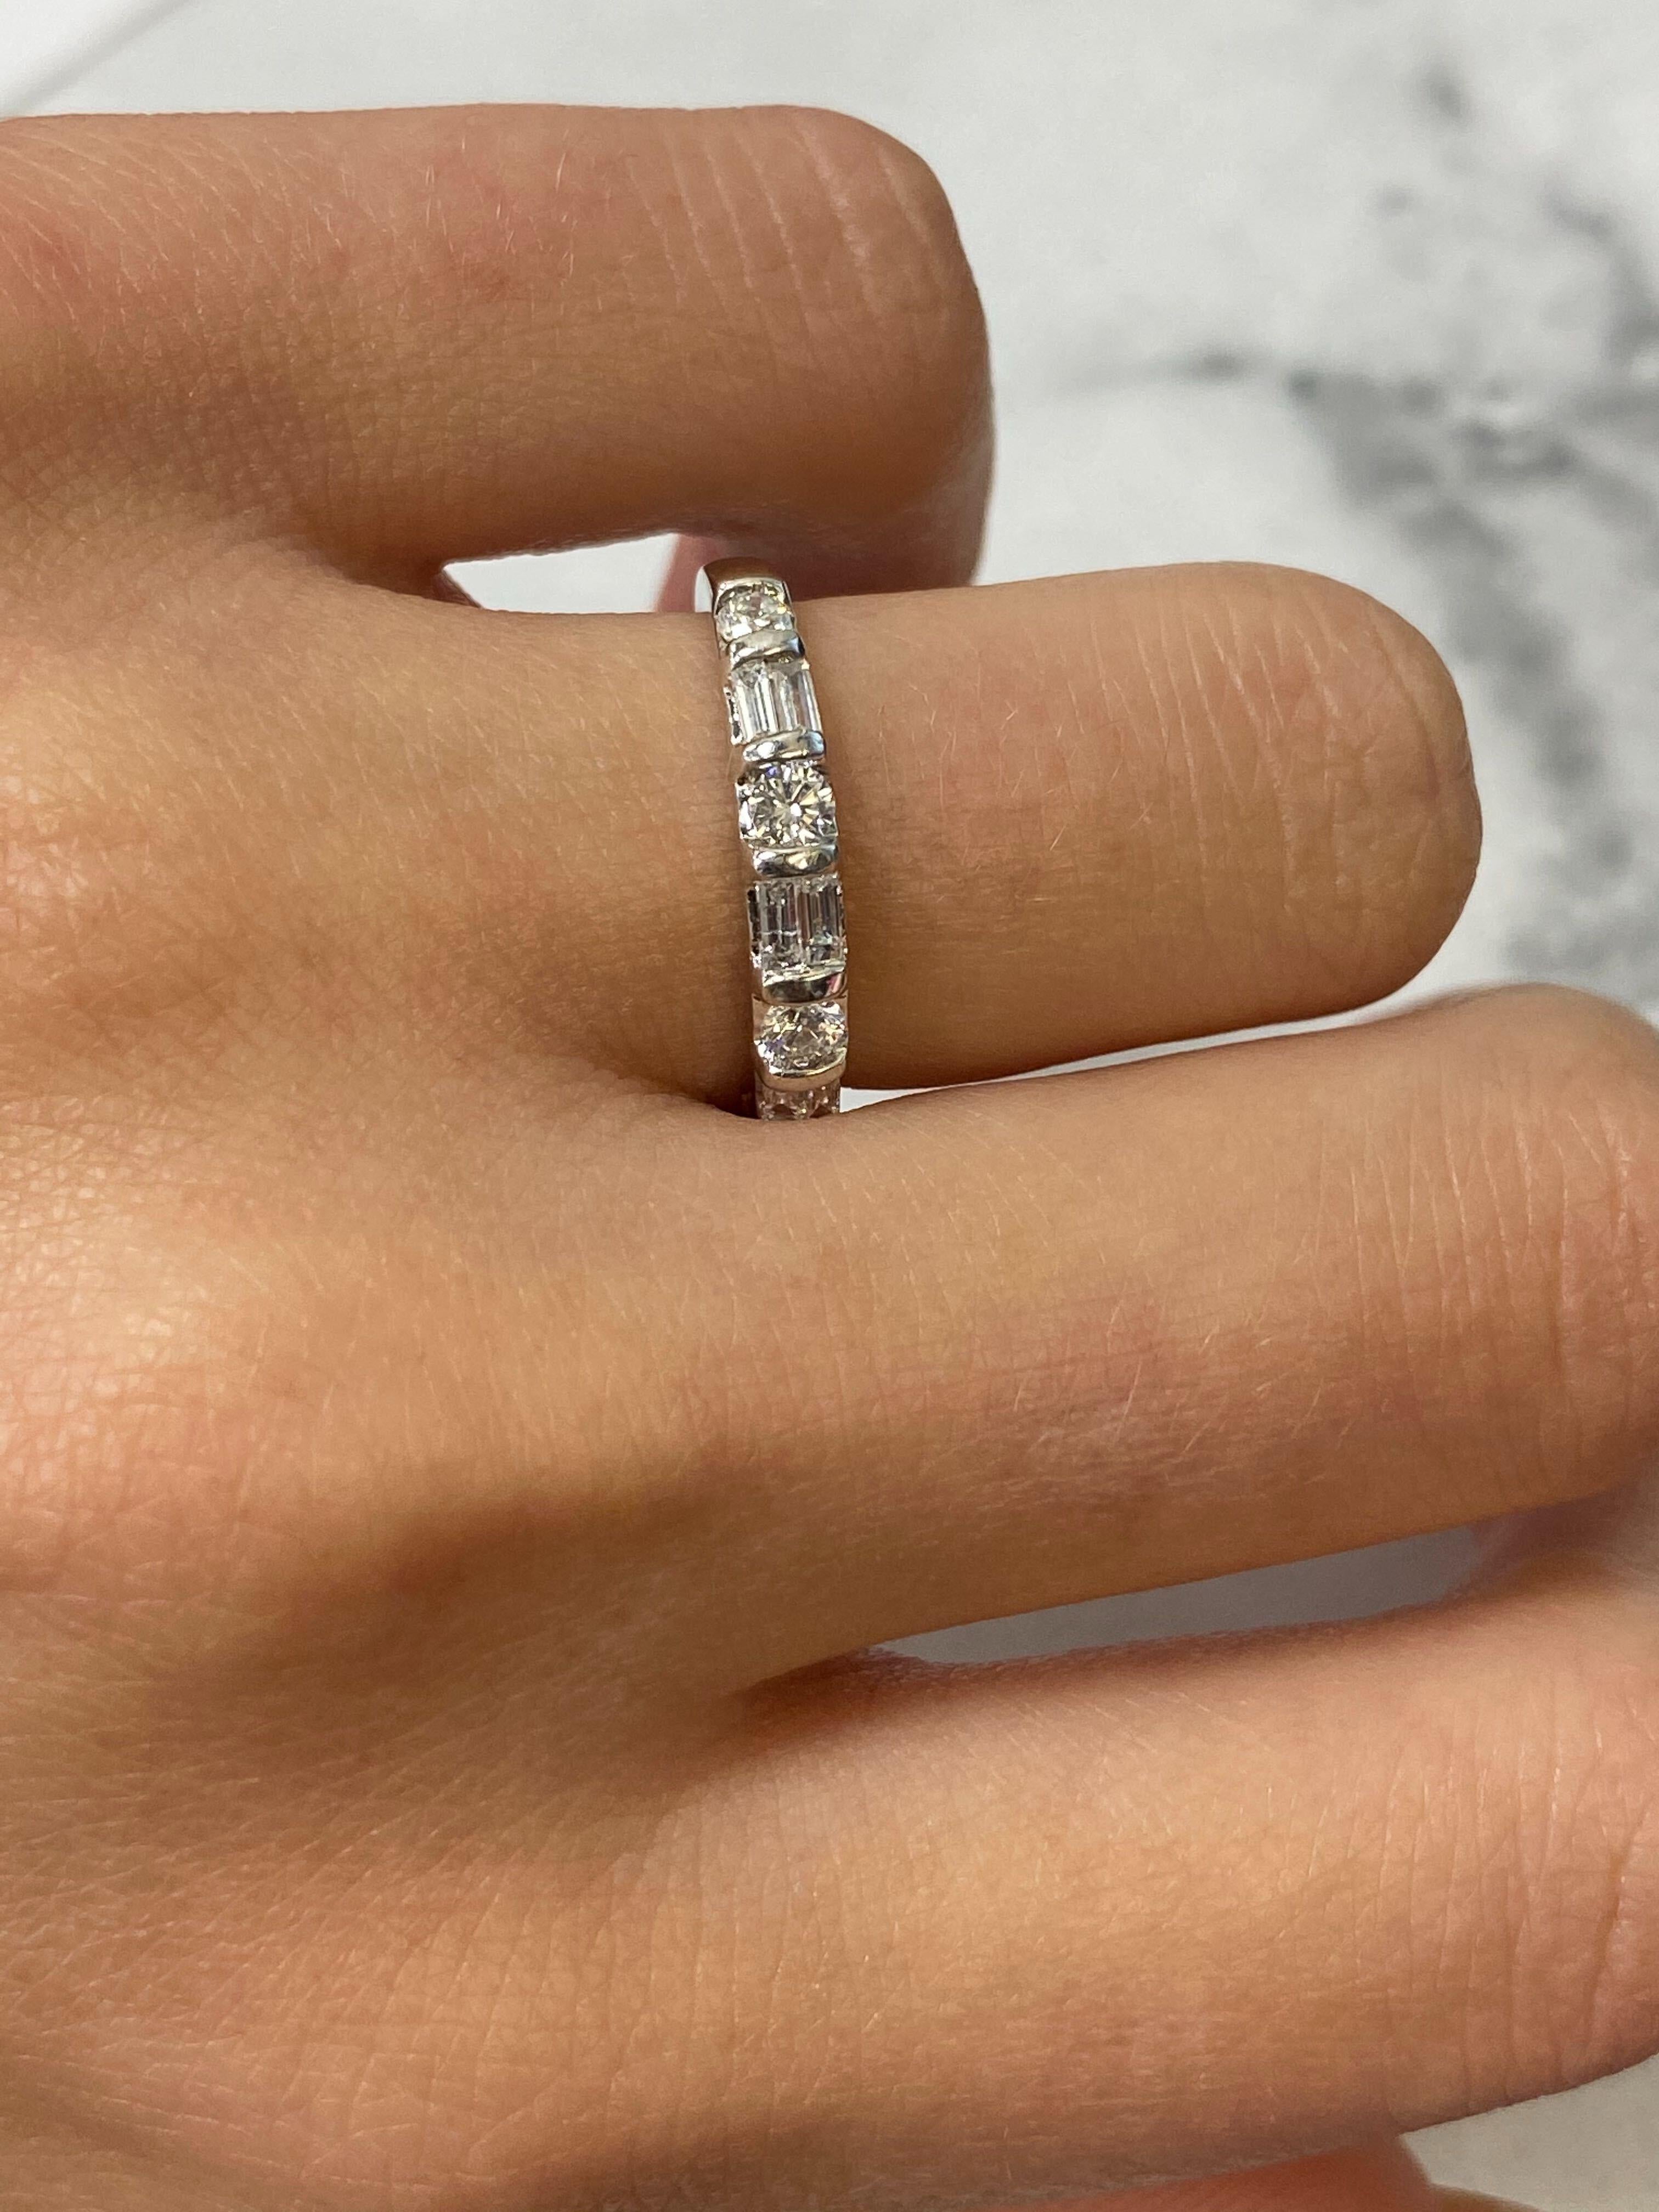 Rachel Koen Diamond Band Ring 14K White Gold 0.75cttw For Sale 1